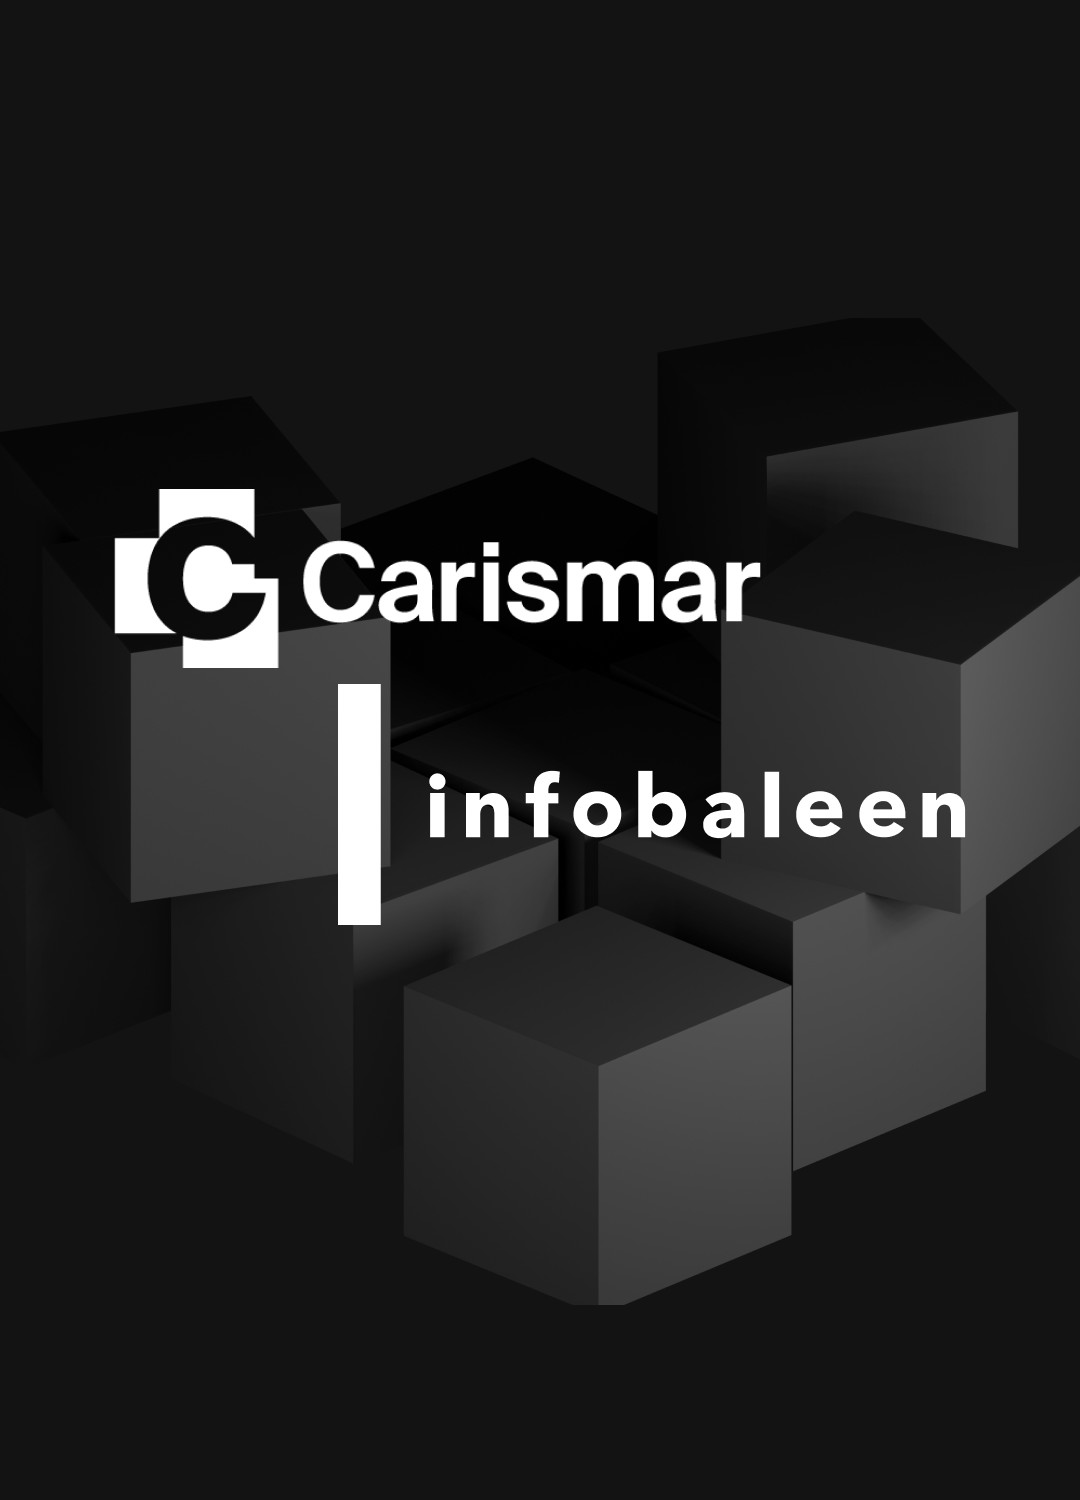 Carismar och Infobaleen i nytt partnerskap